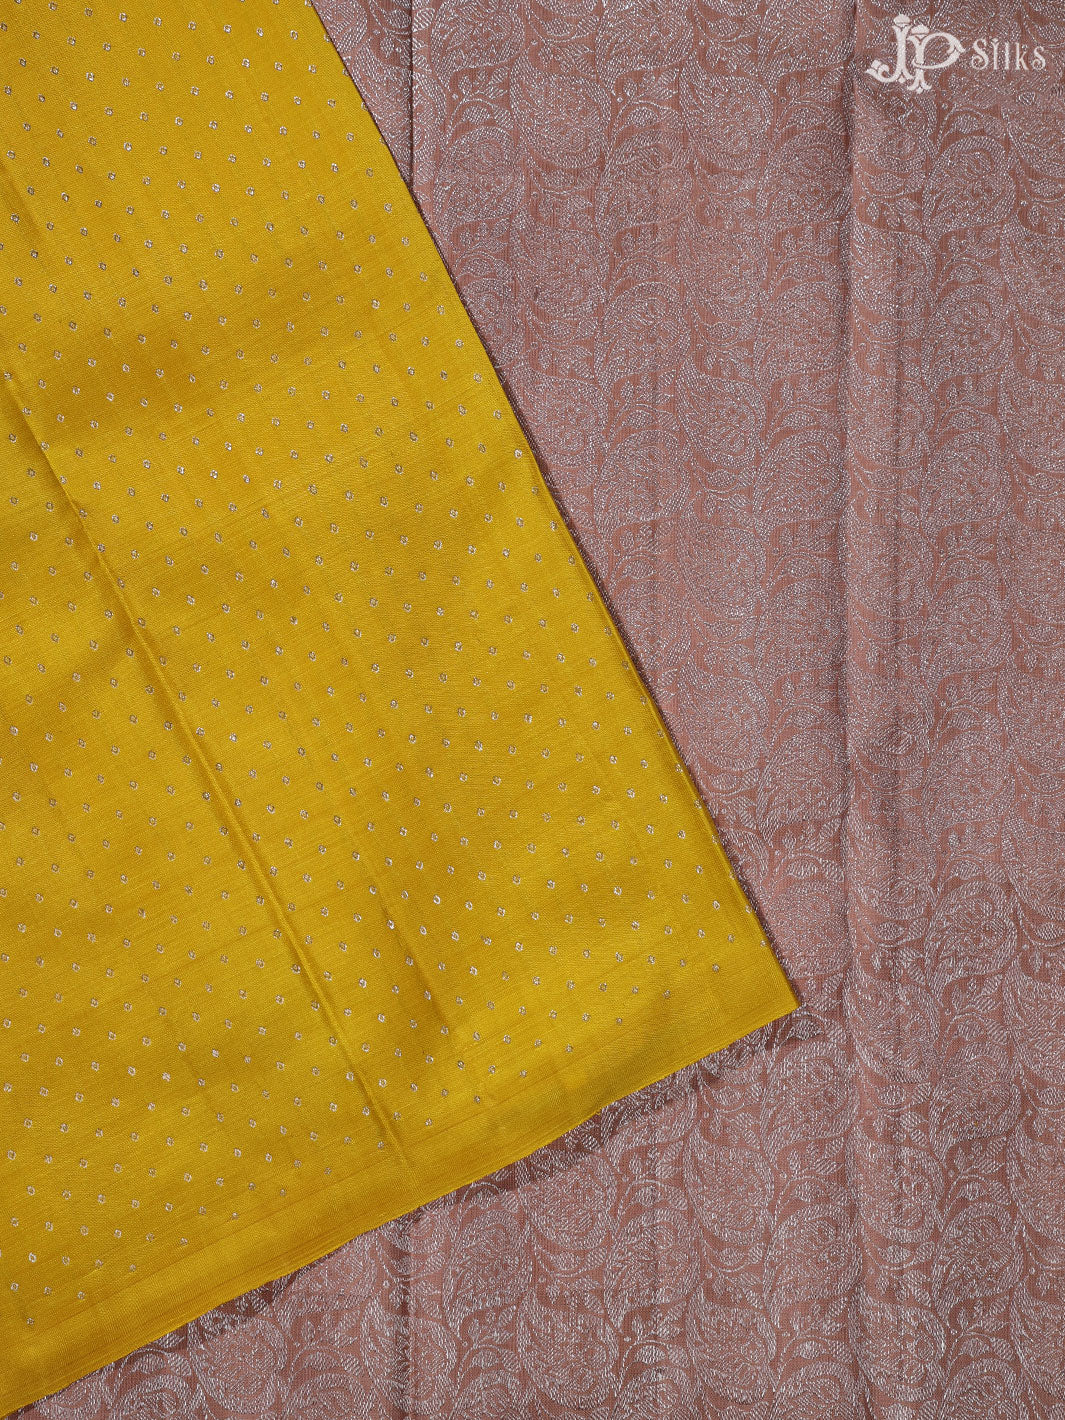 Lemon Yellow and Mauve Kanchipuram silk Saree - A1480 - View 3